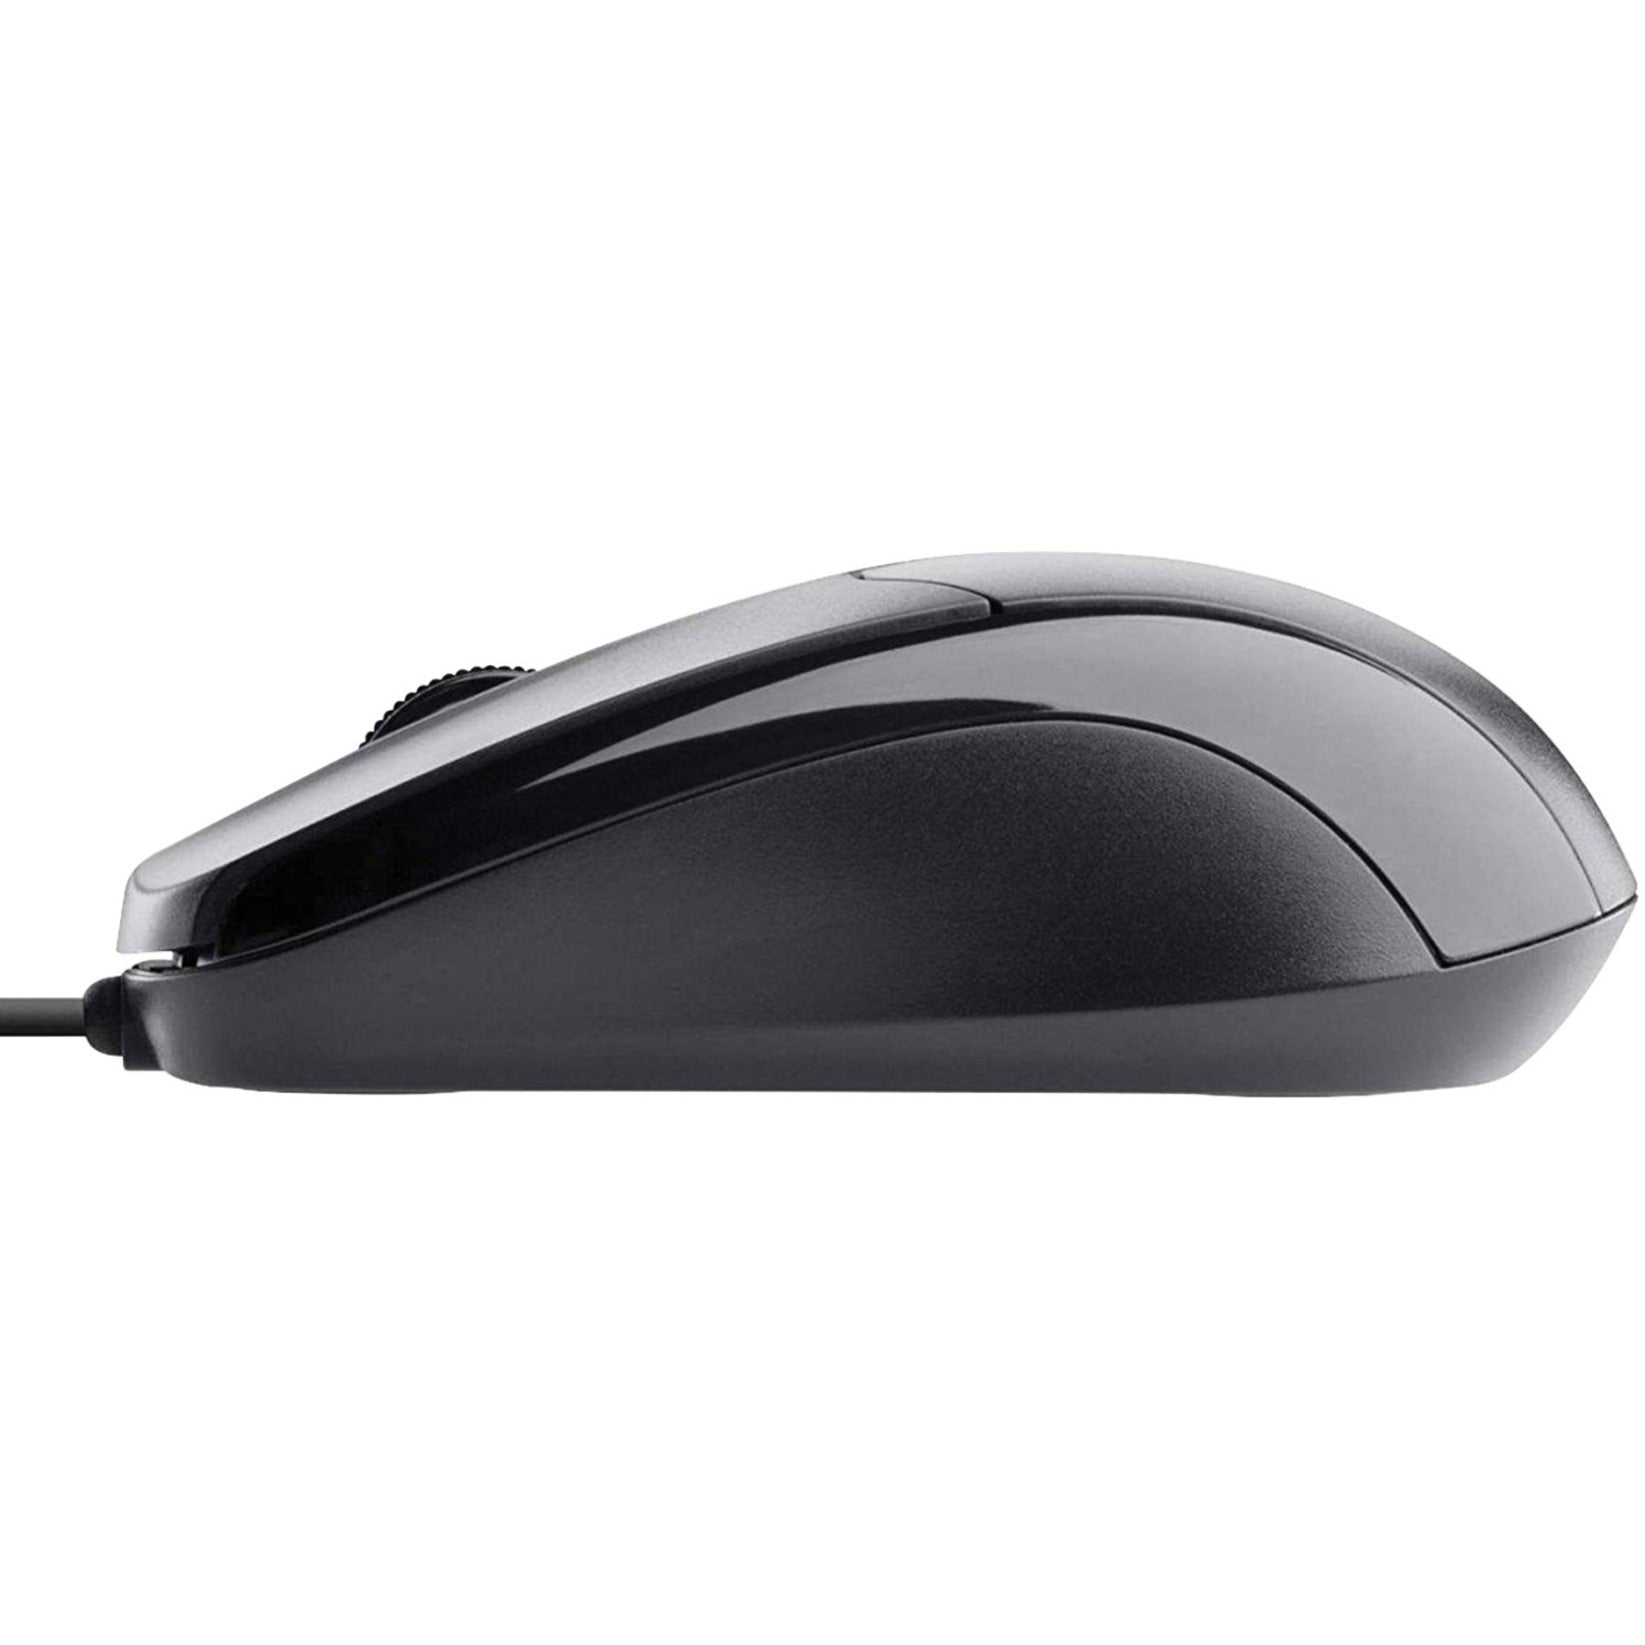 Belkin F5M010QBLK Mouse, Ergonomic Design, 800 DPI Optical Scroller